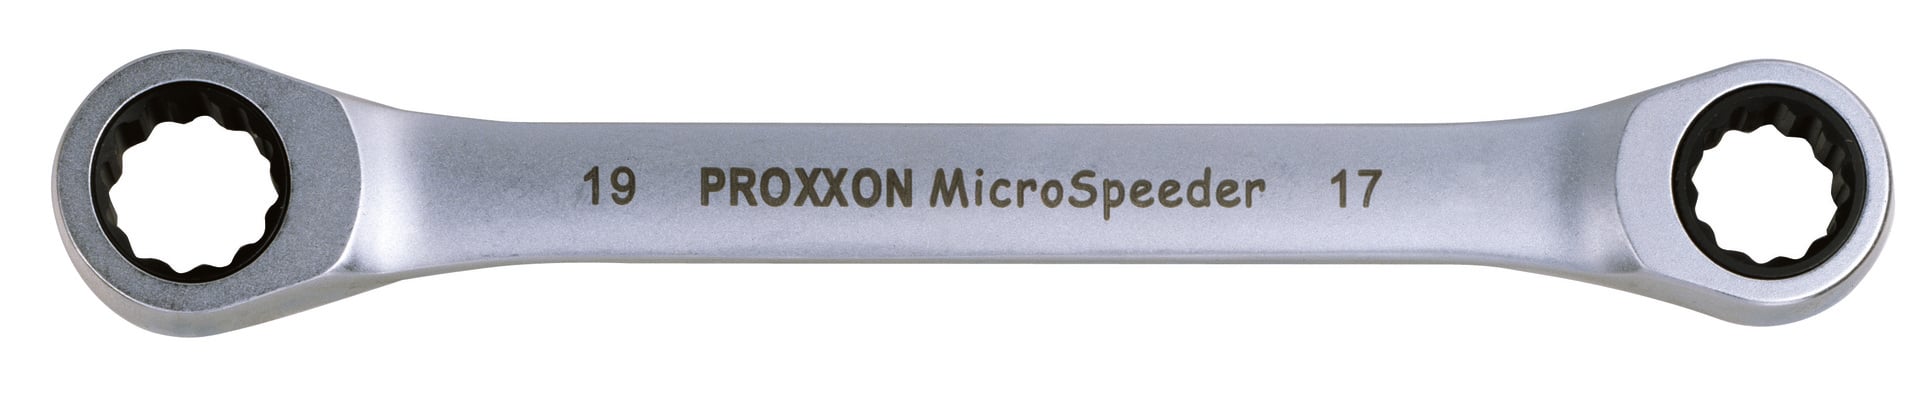 PROXXON GmbH Micro-Speeder Ratschenschlüssel 16x18mm